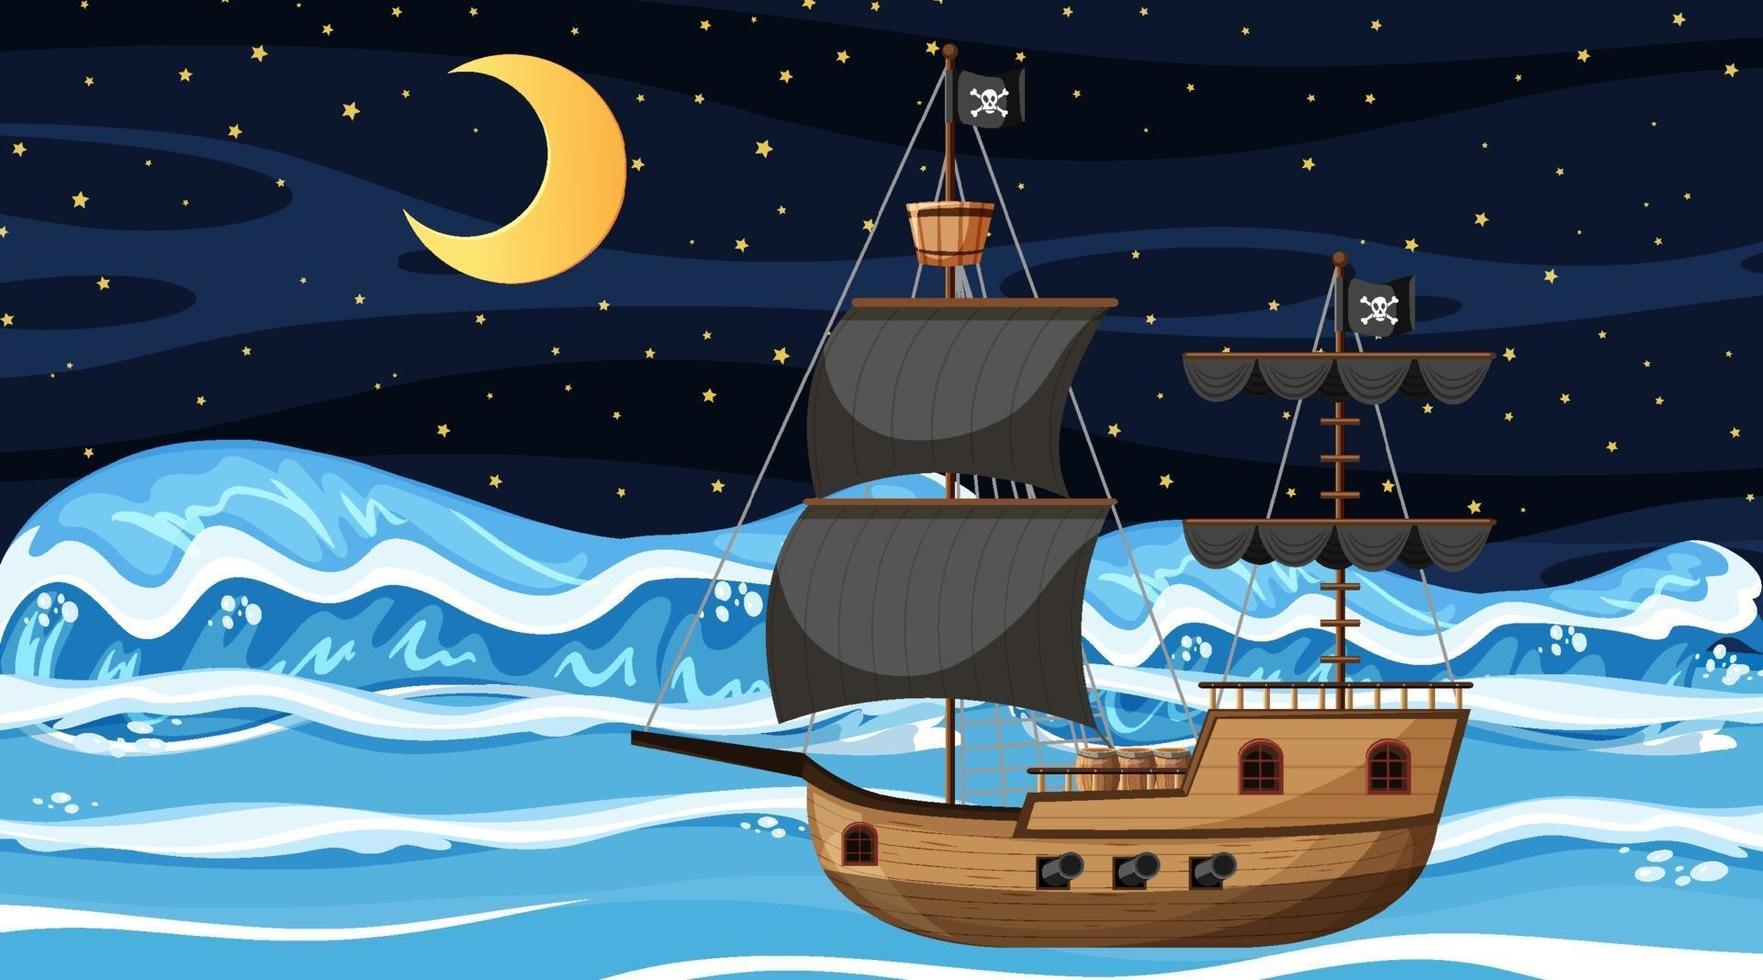 oceano con nave pirata di scena notturna in stile cartone animato vettore